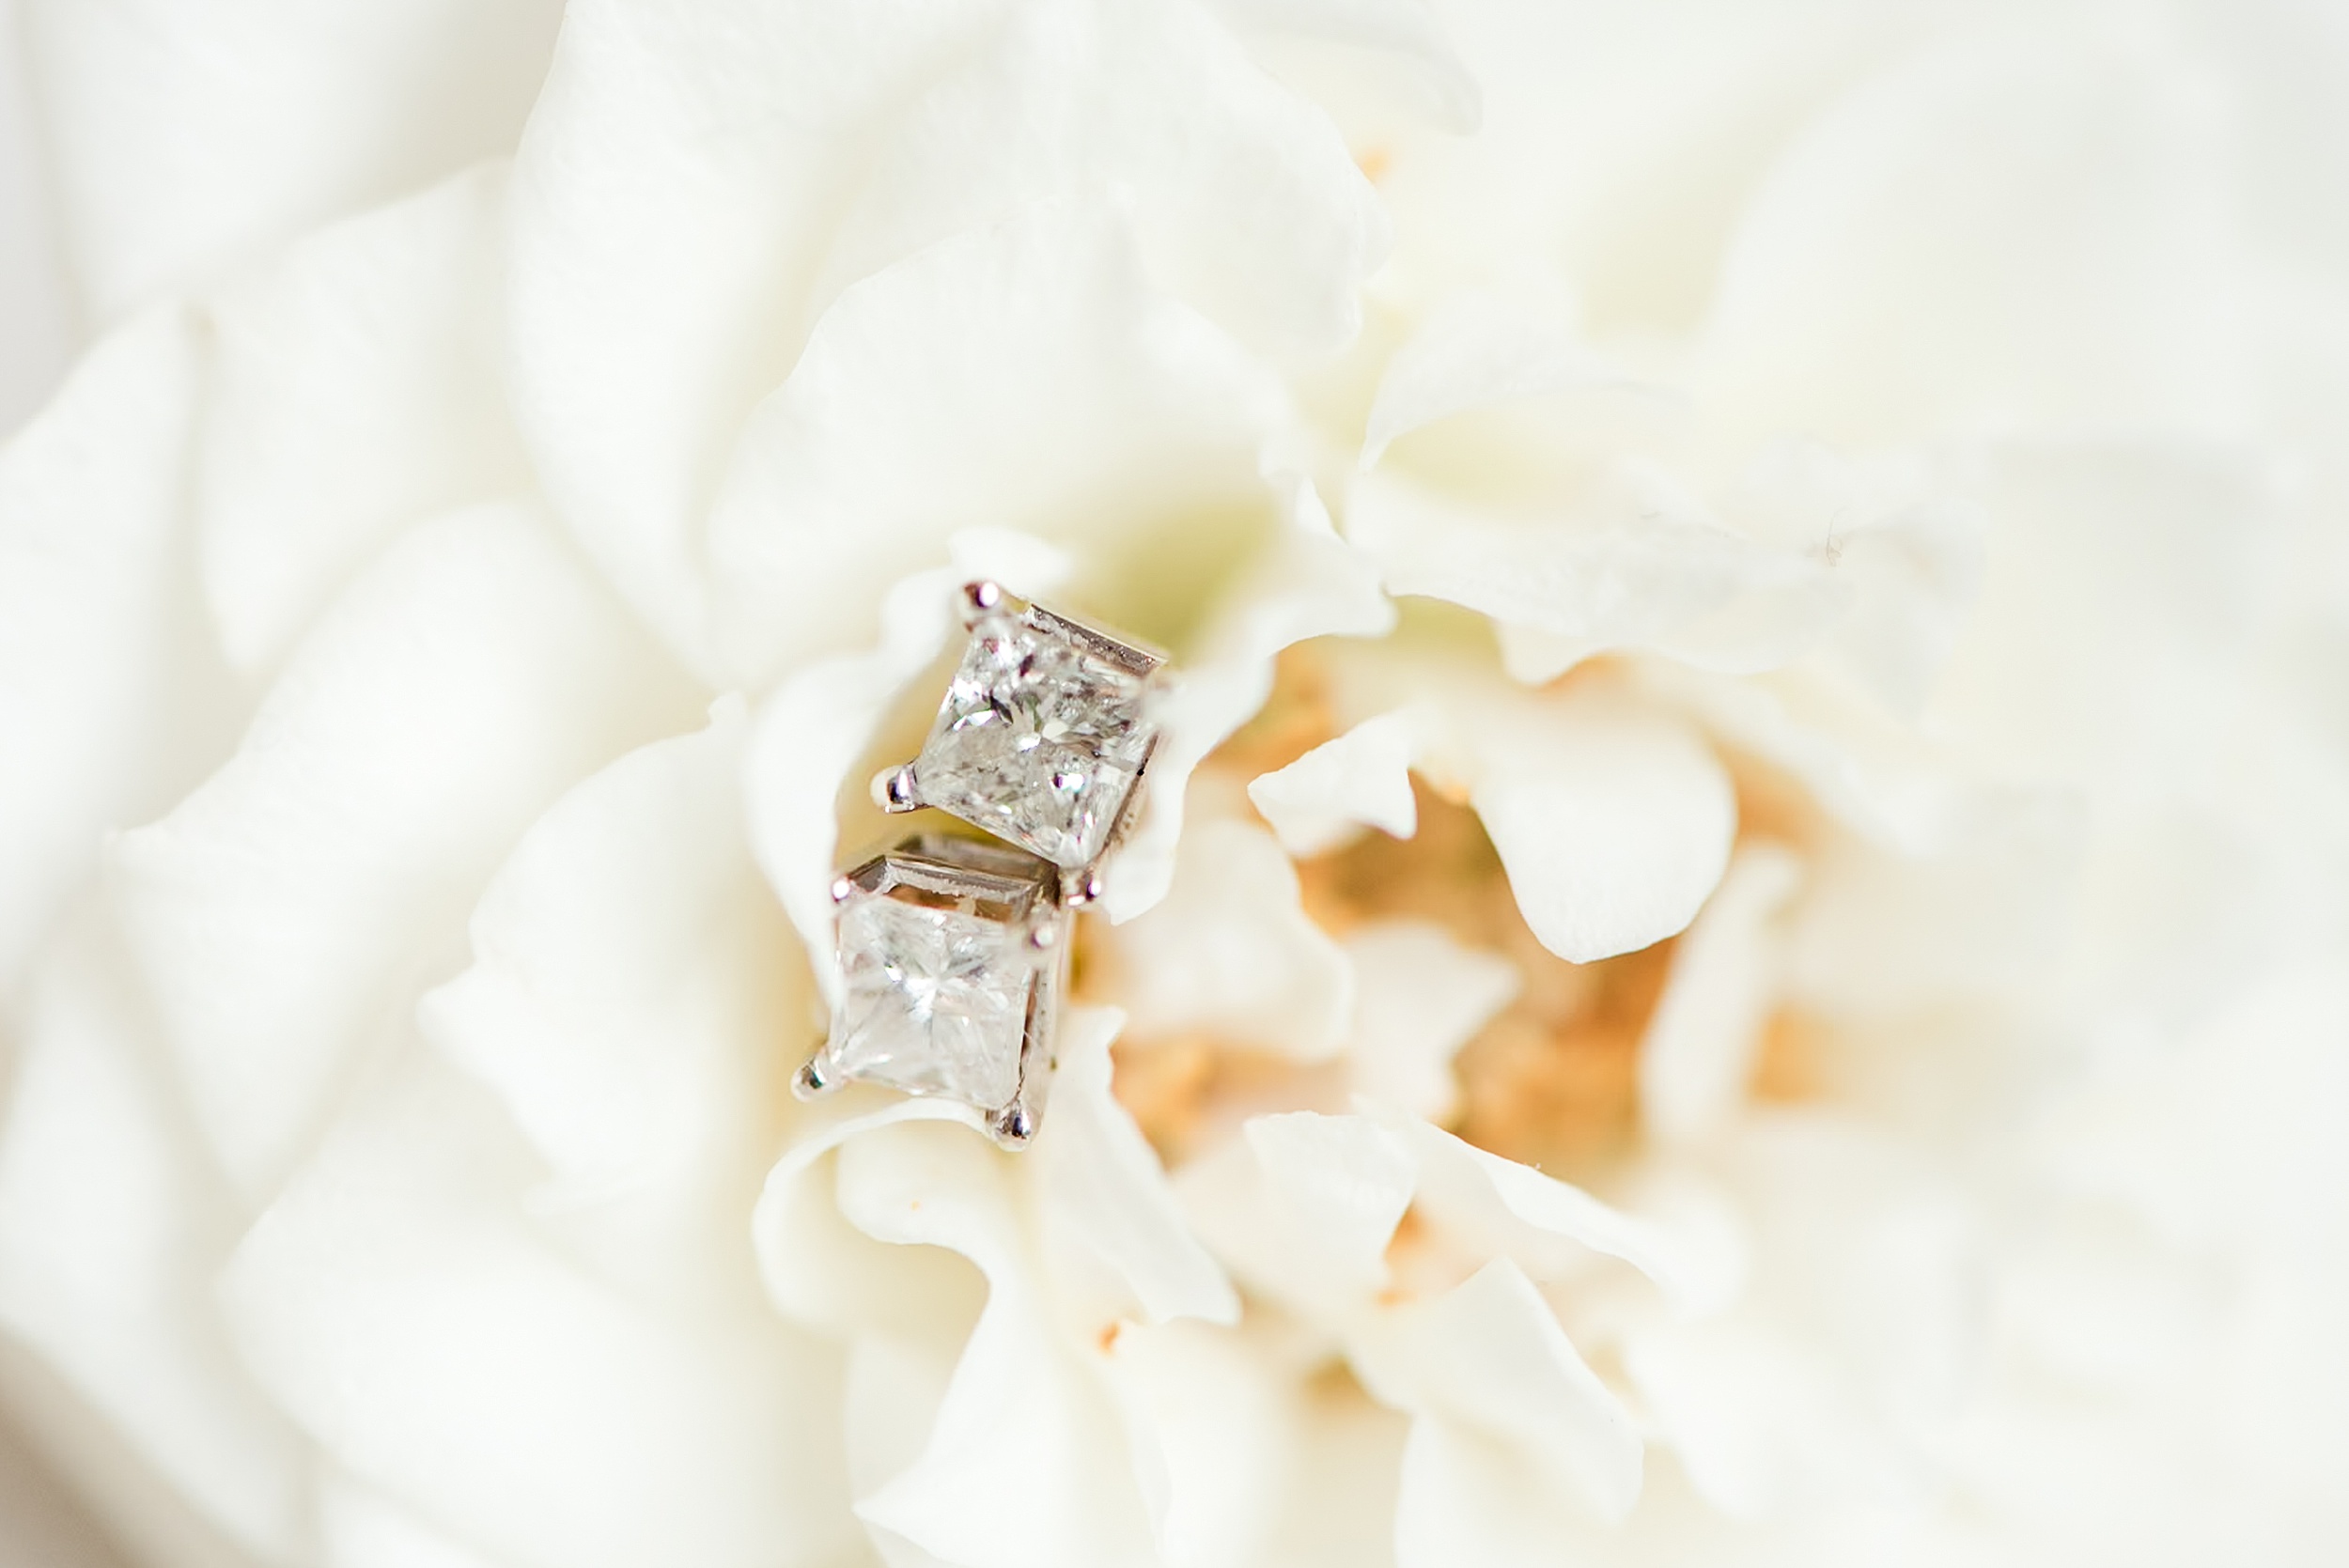 Details of diamond earrings sitting in a flower